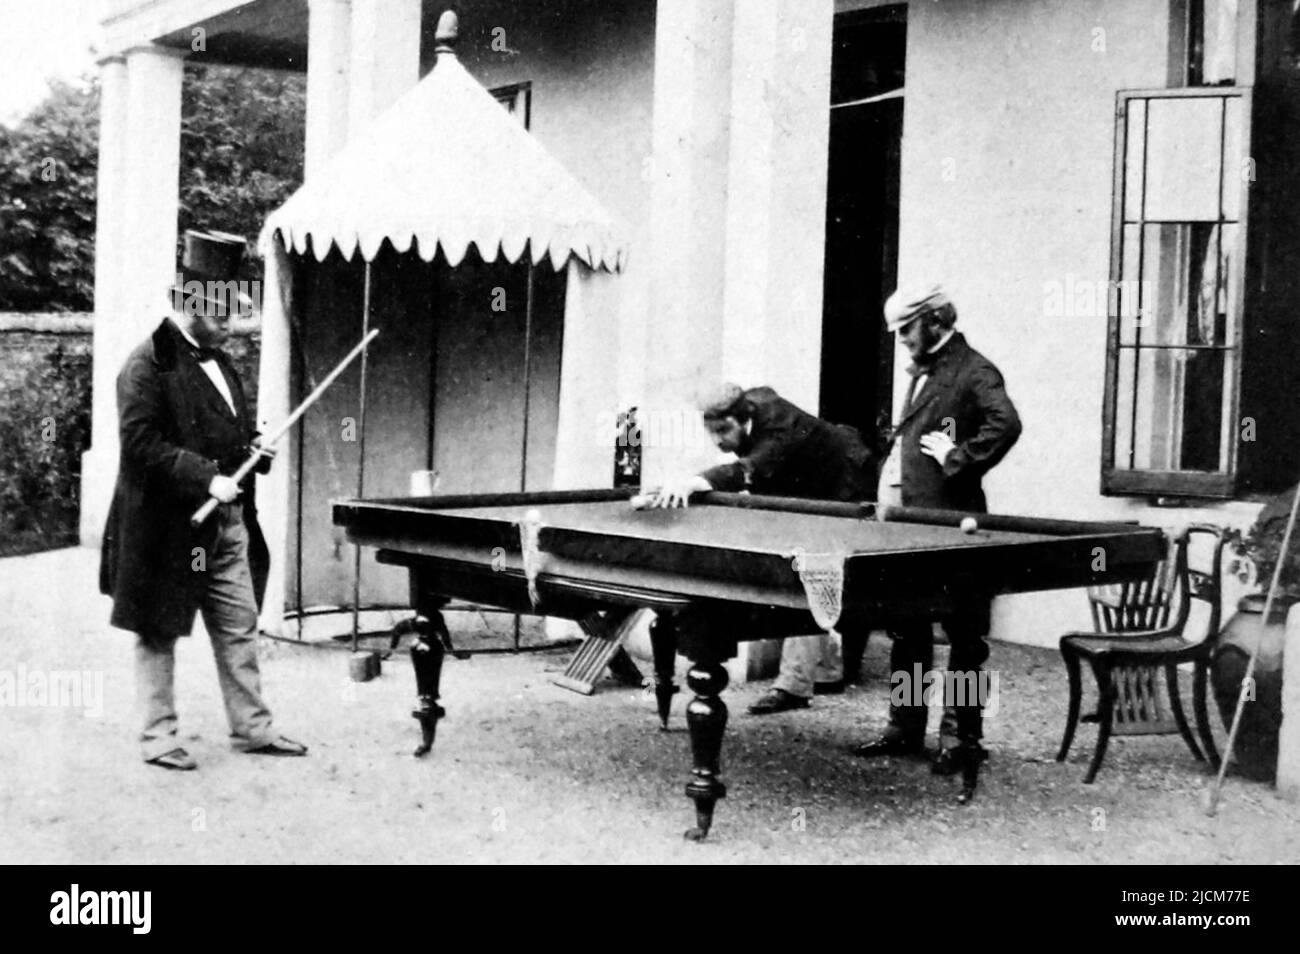 Caballeros jugando al billar, probablemente 1860/70s Foto de stock